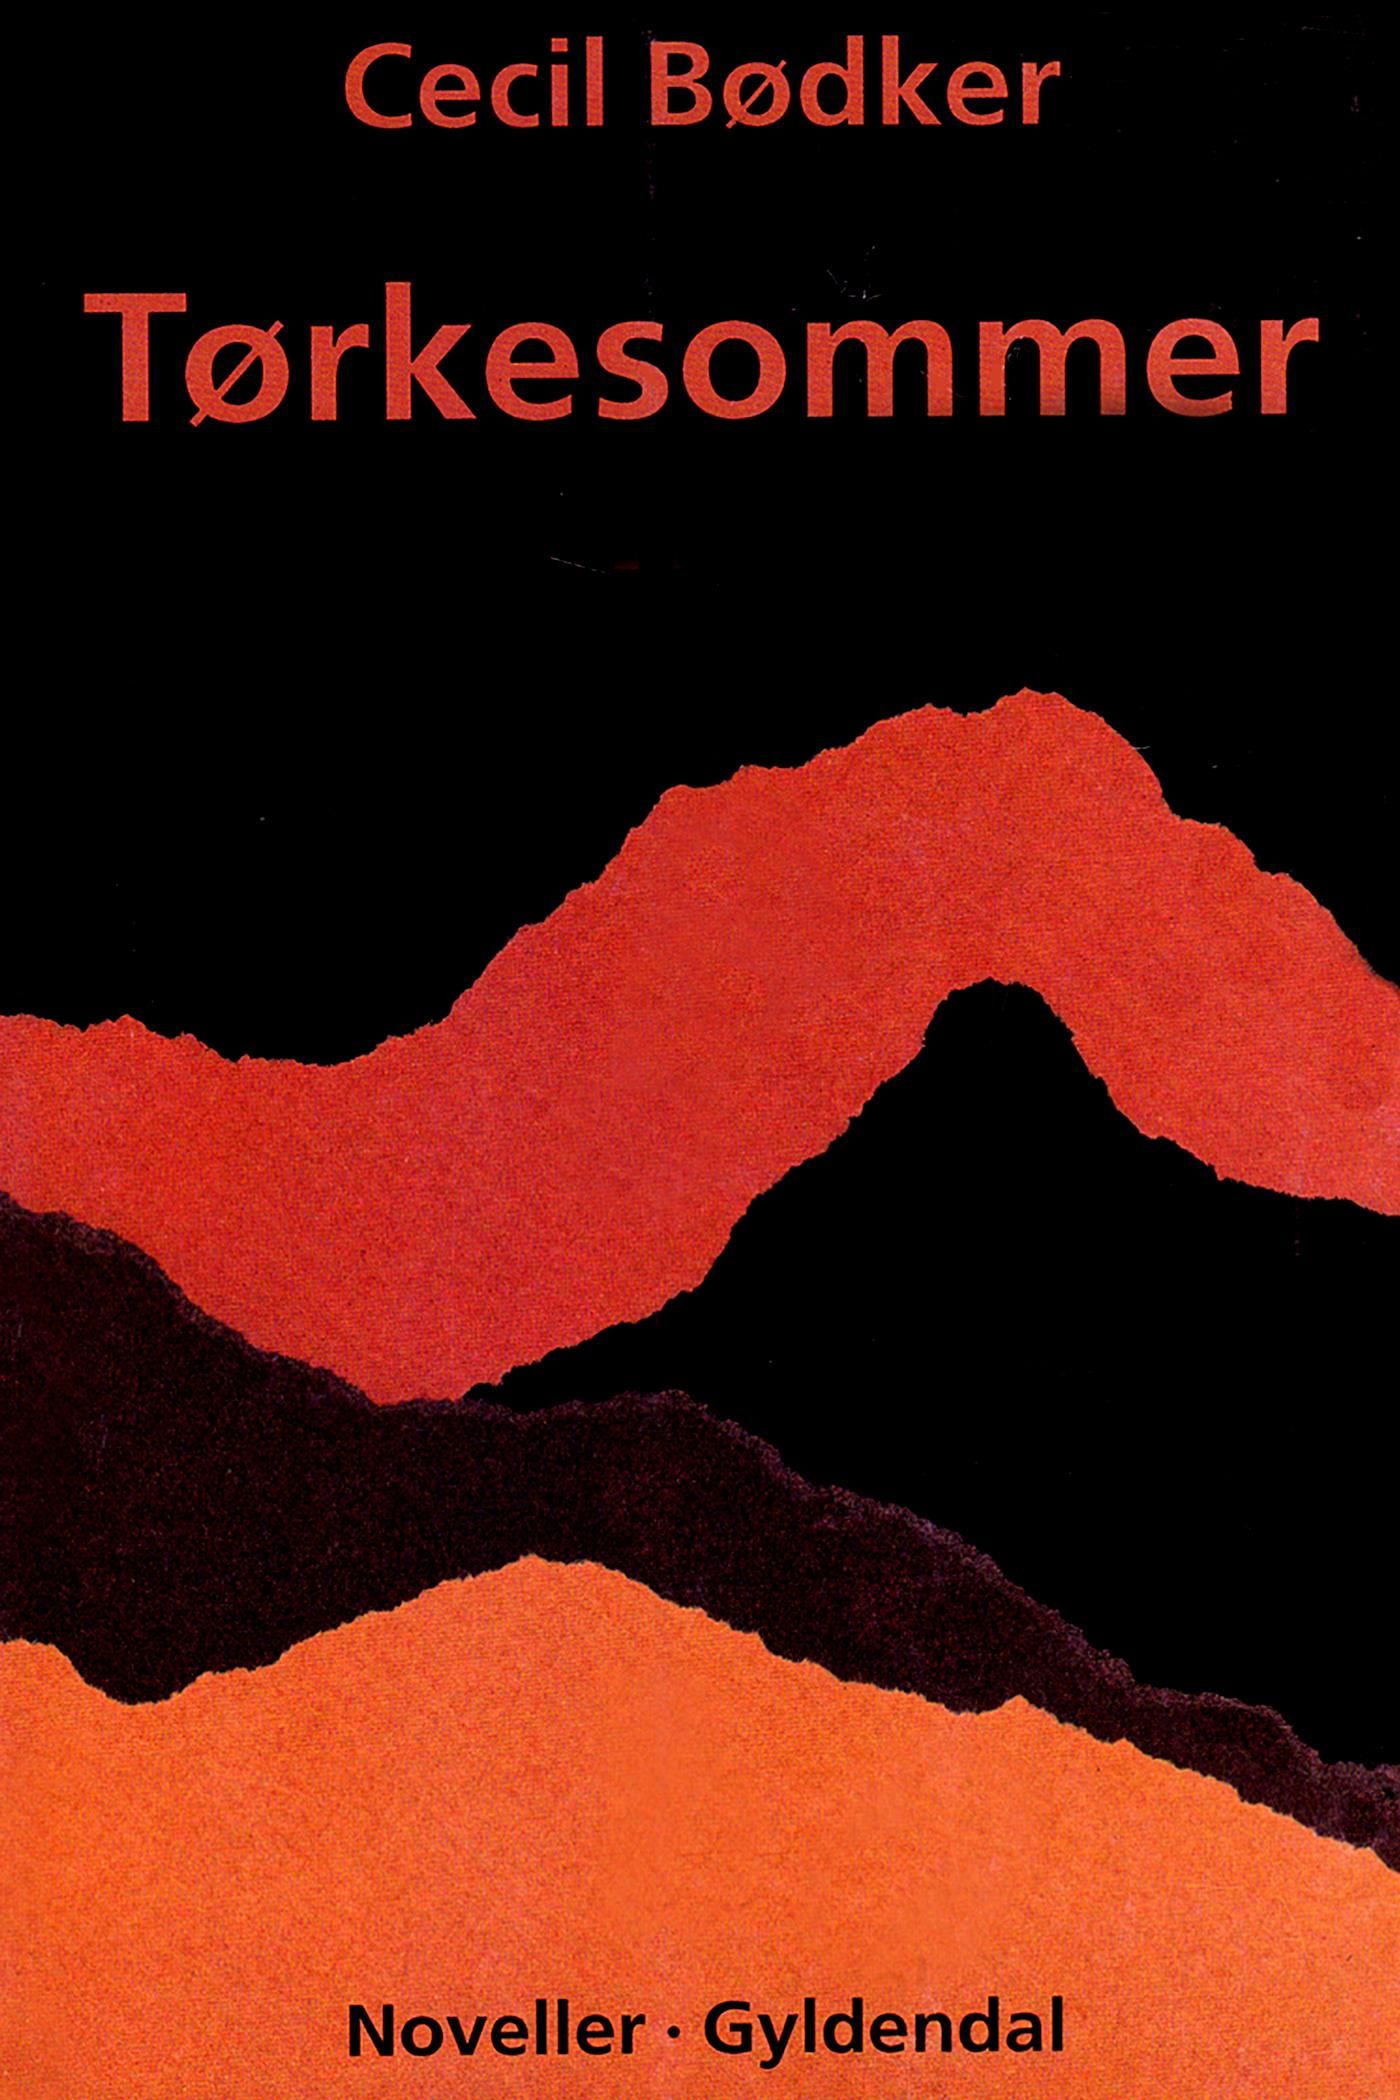 Tørkesommer, e-bok av Cecil Bødker